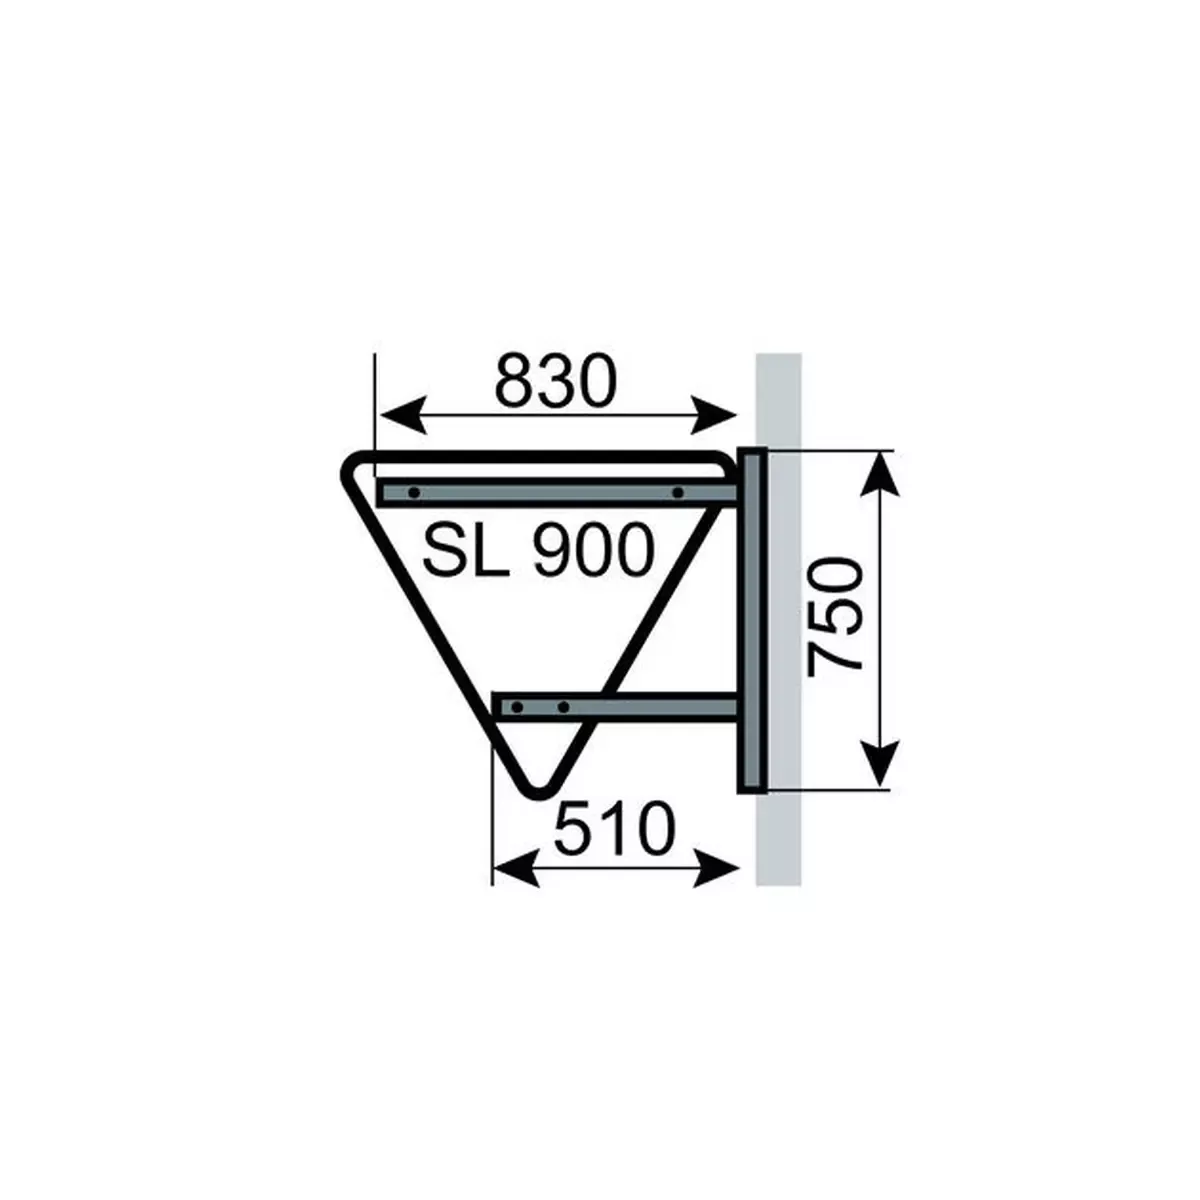 Wandhalterung für Verkehrszeichen SL 900, Bohrung lt. IVZ, aus Flachstahl 30 x 5 mm